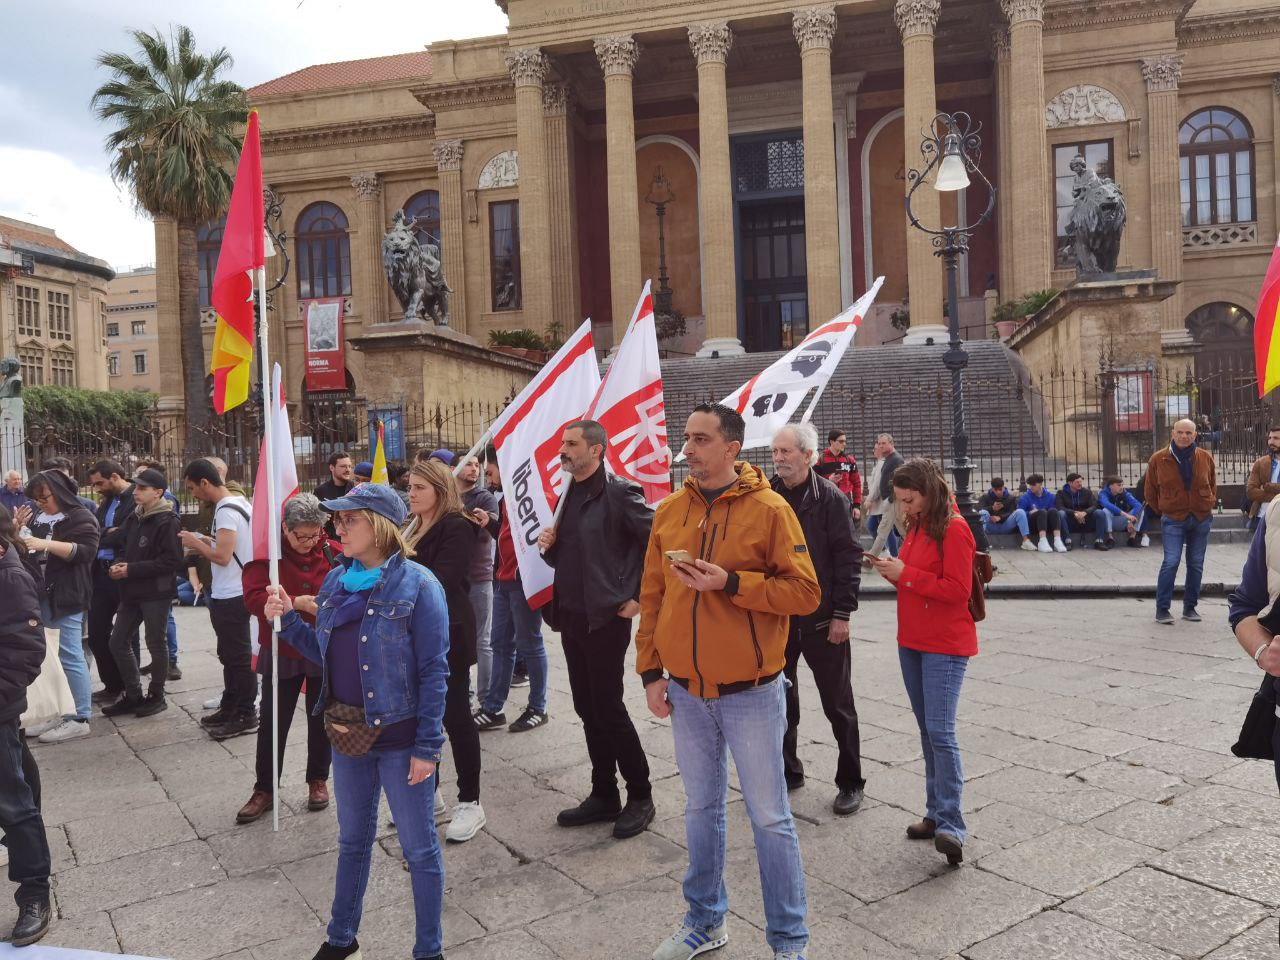 La manifestazione degli indipendentisti a Palermo, 1 aprile, contro l'autonomia differenziata